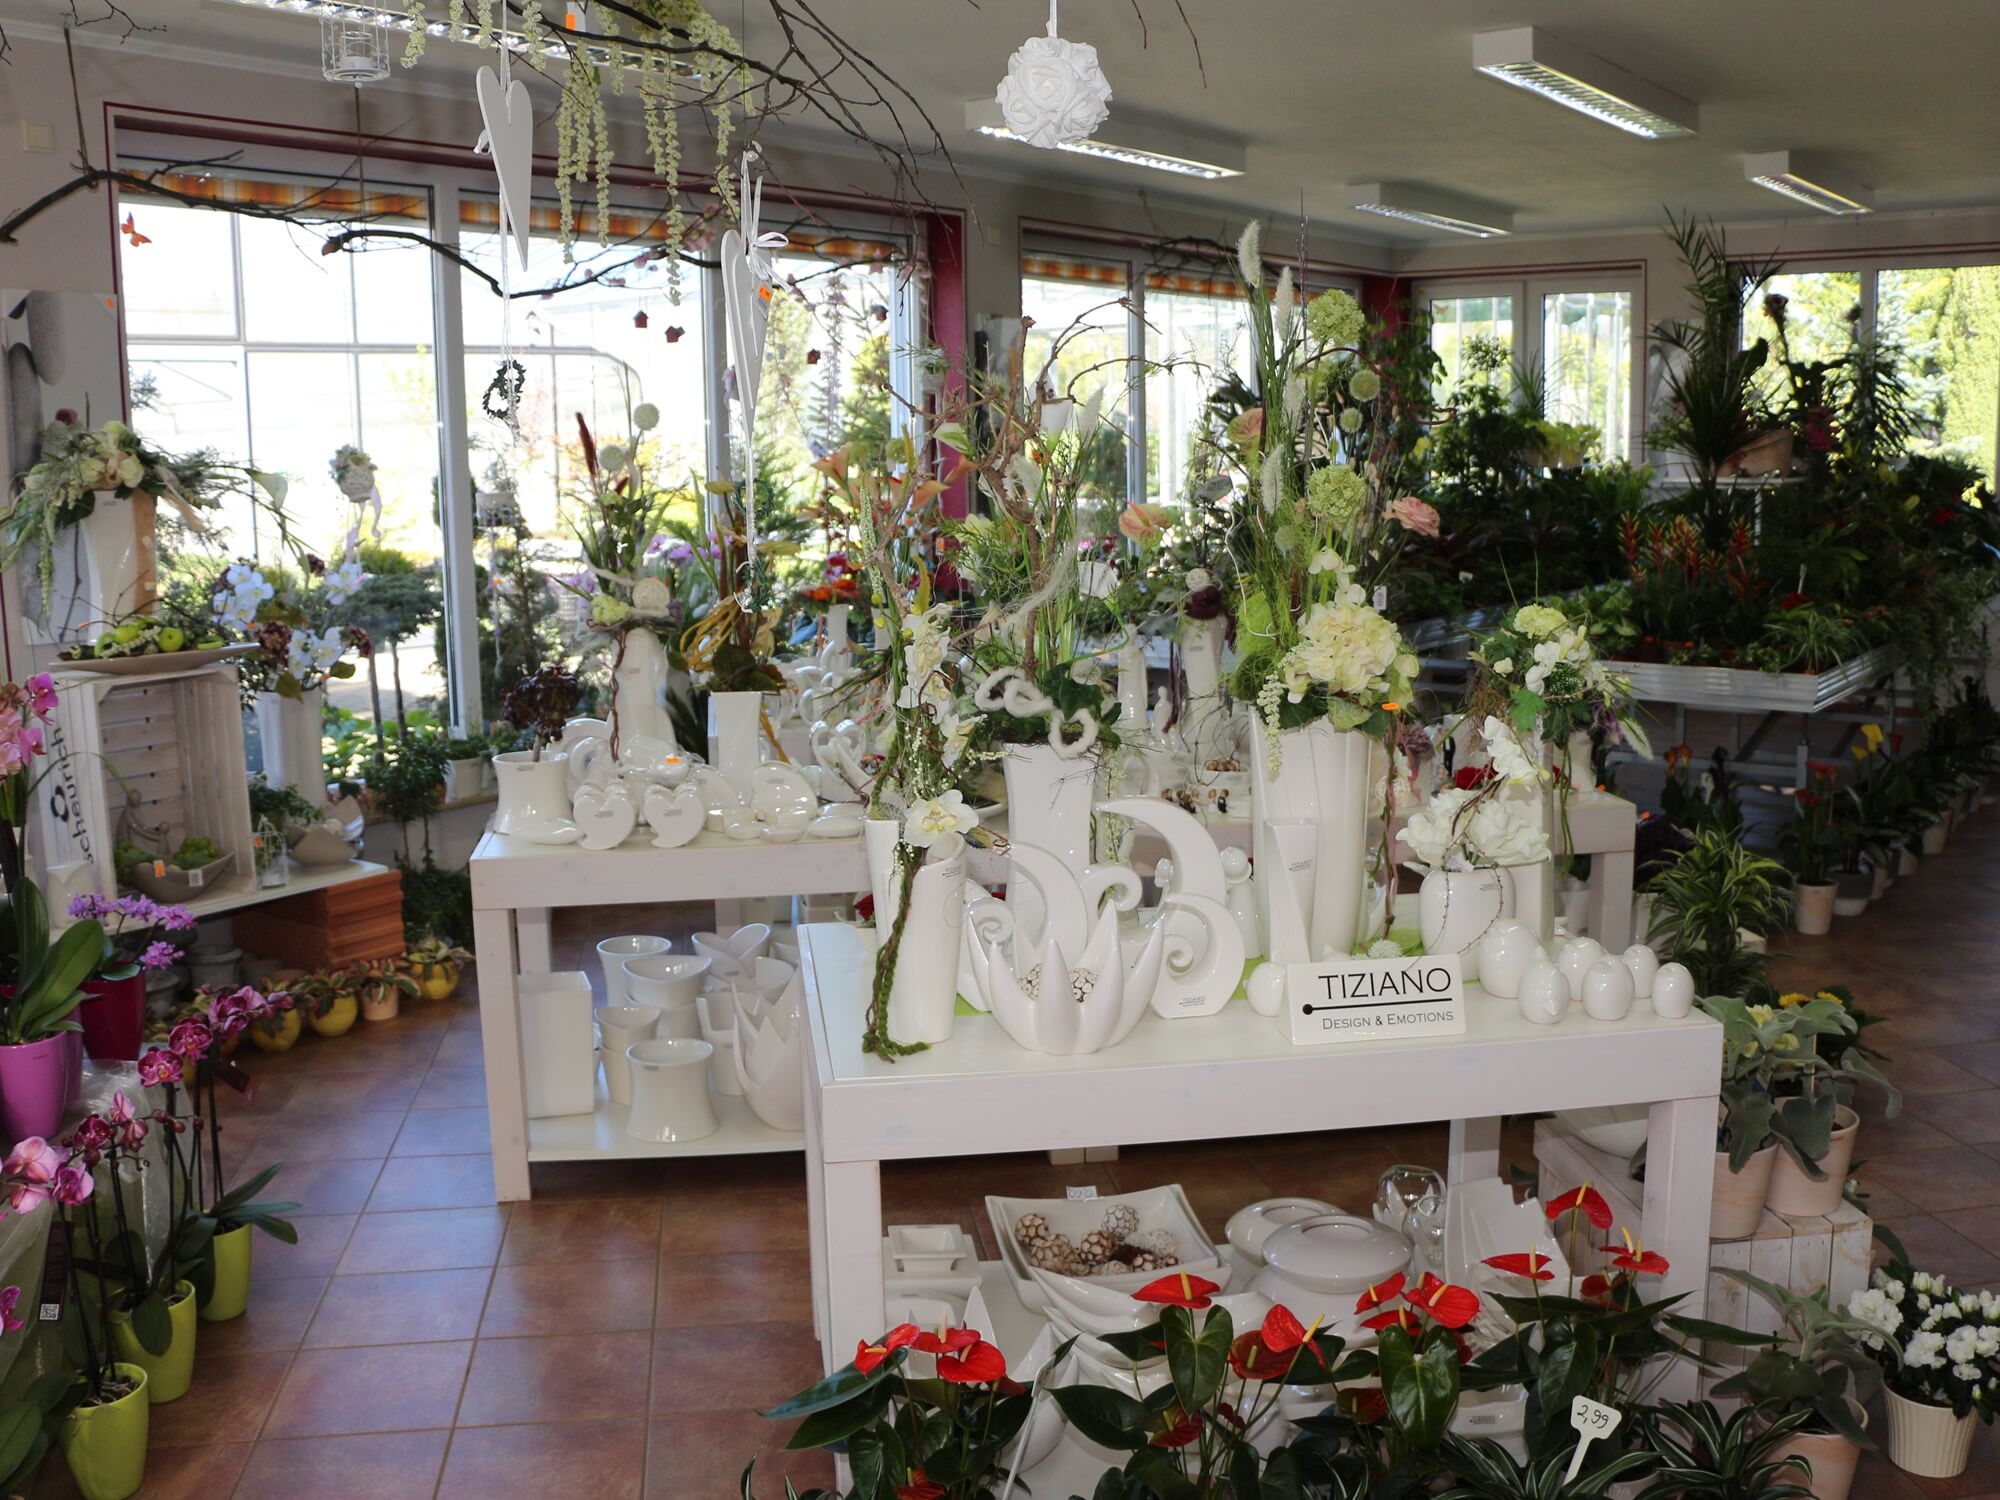 Individuelle Floristik & Blumen zum Verschenken in unserem Blumenladen in der Nähe von Bautzen & Kamenz.